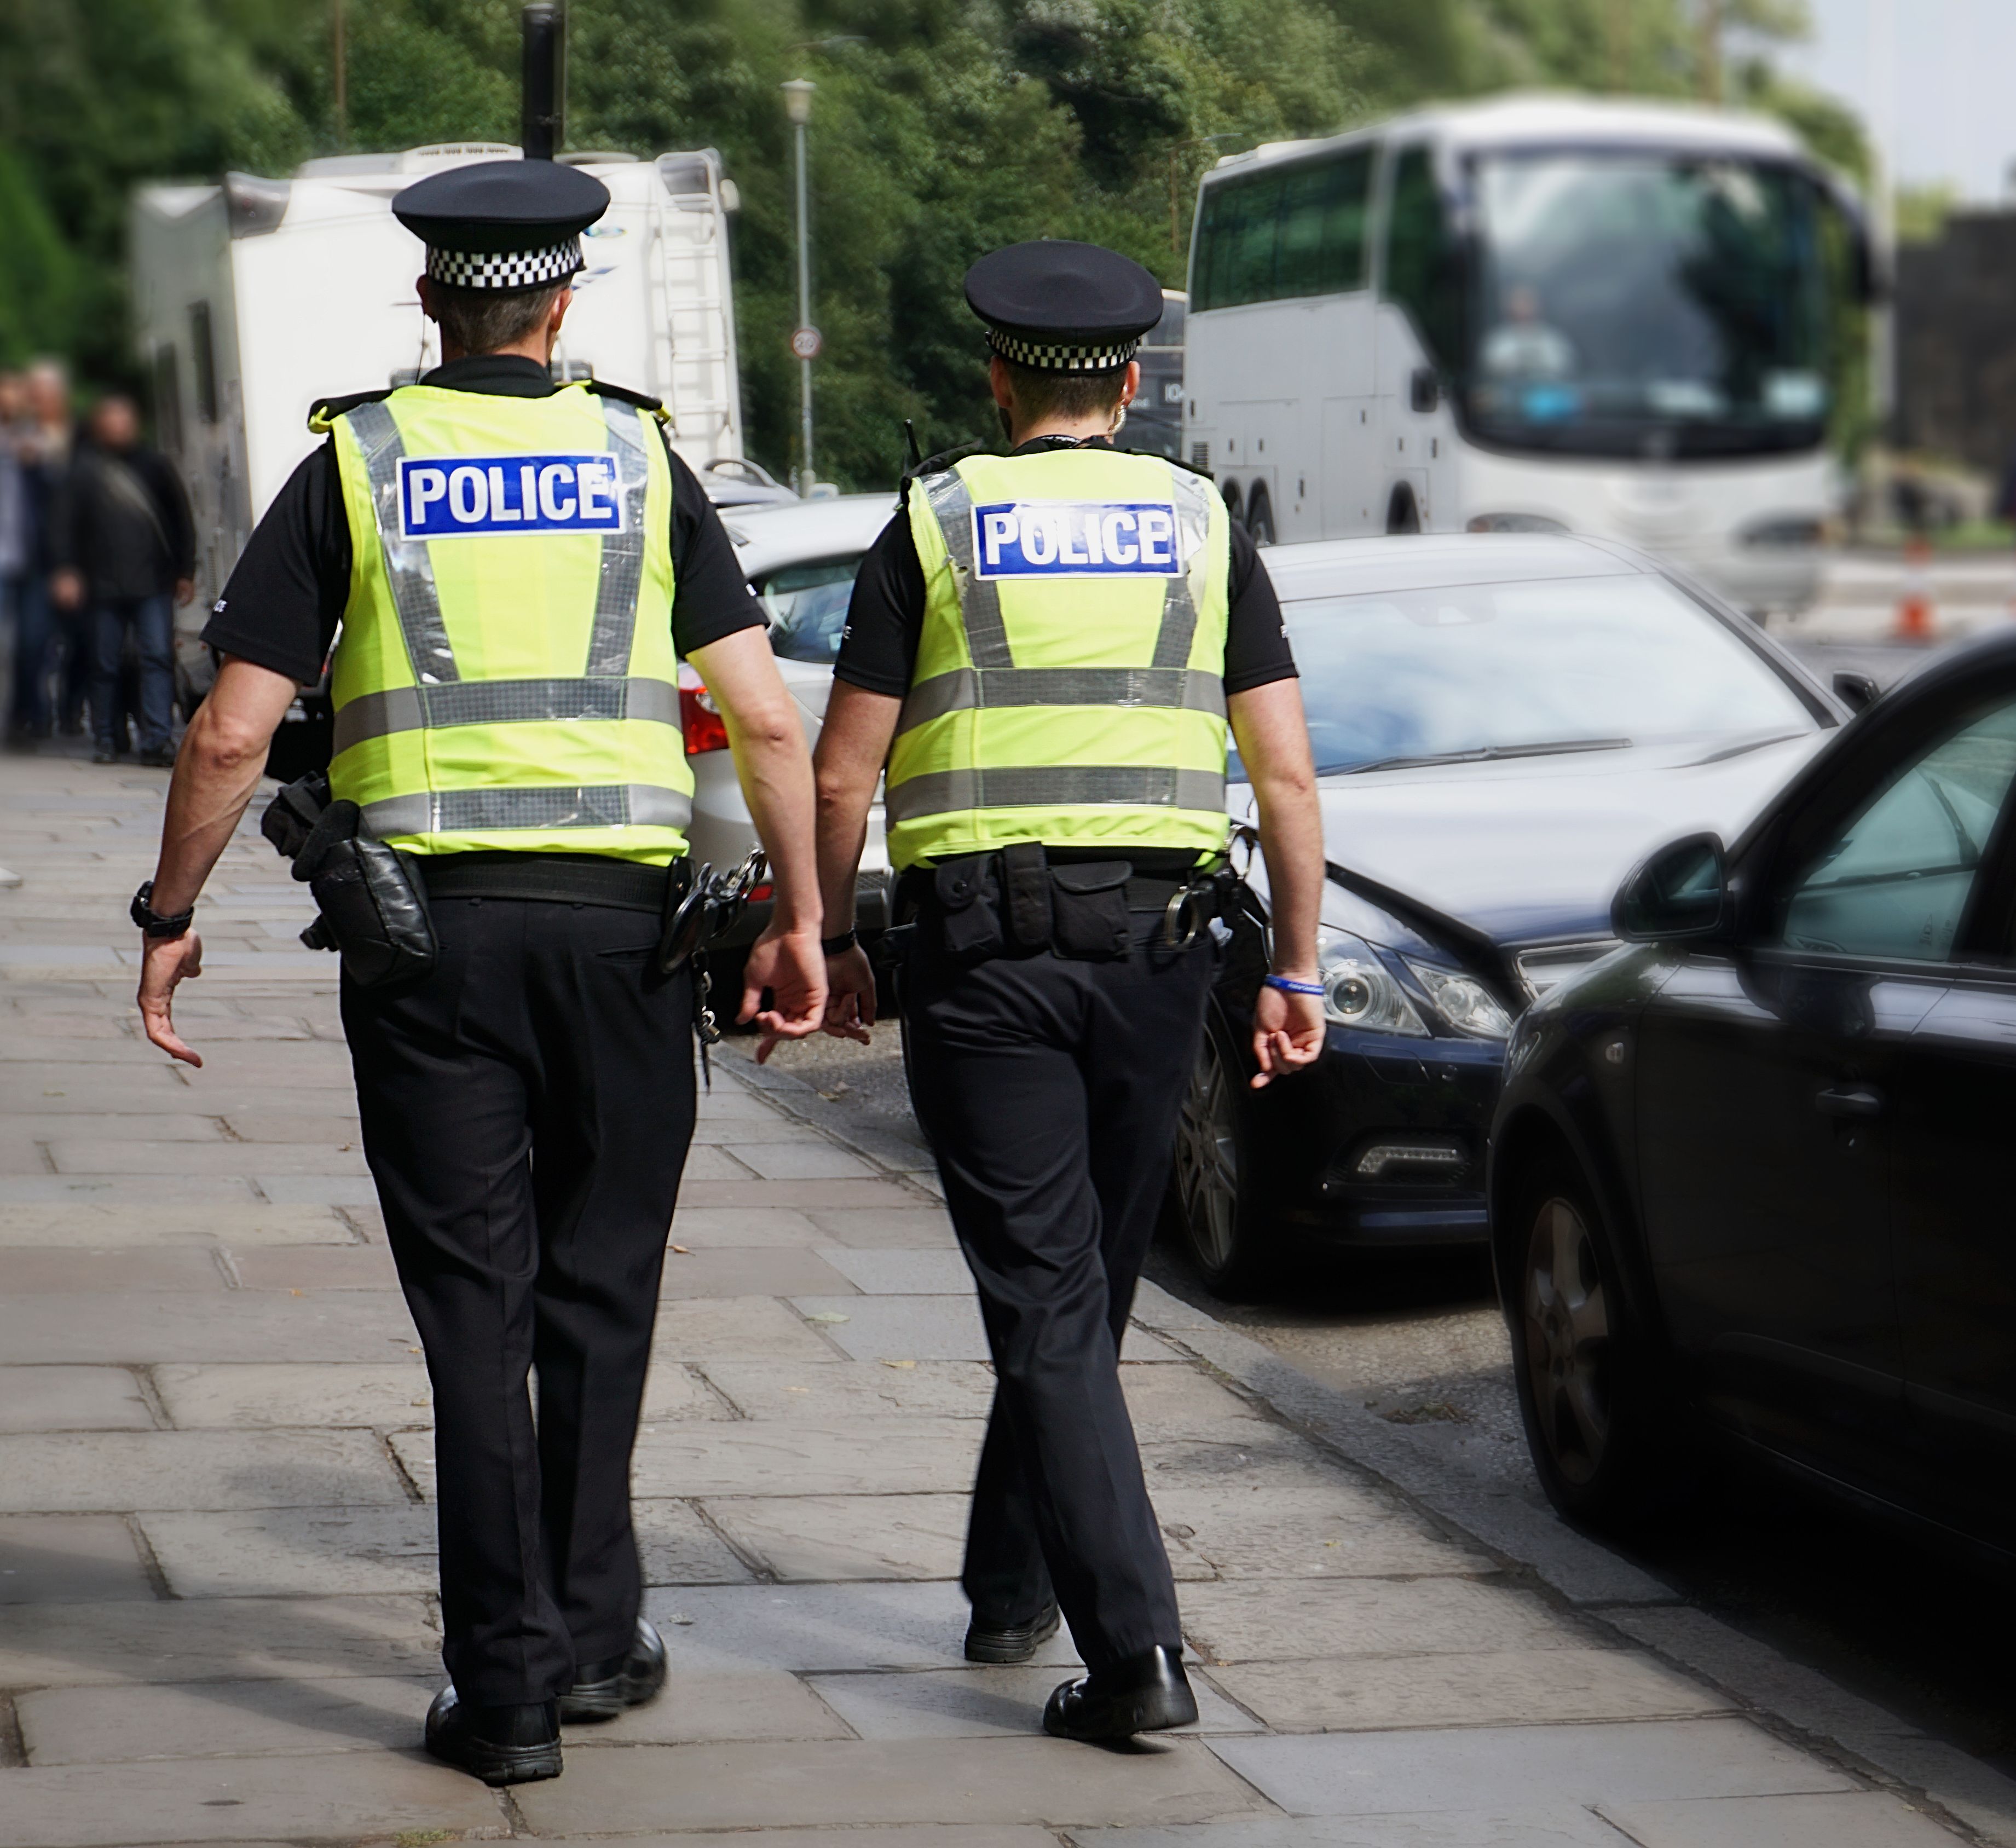 Zwei Polizisten gehen an parkenden Autos vorbei. | Quelle: Shutterstock